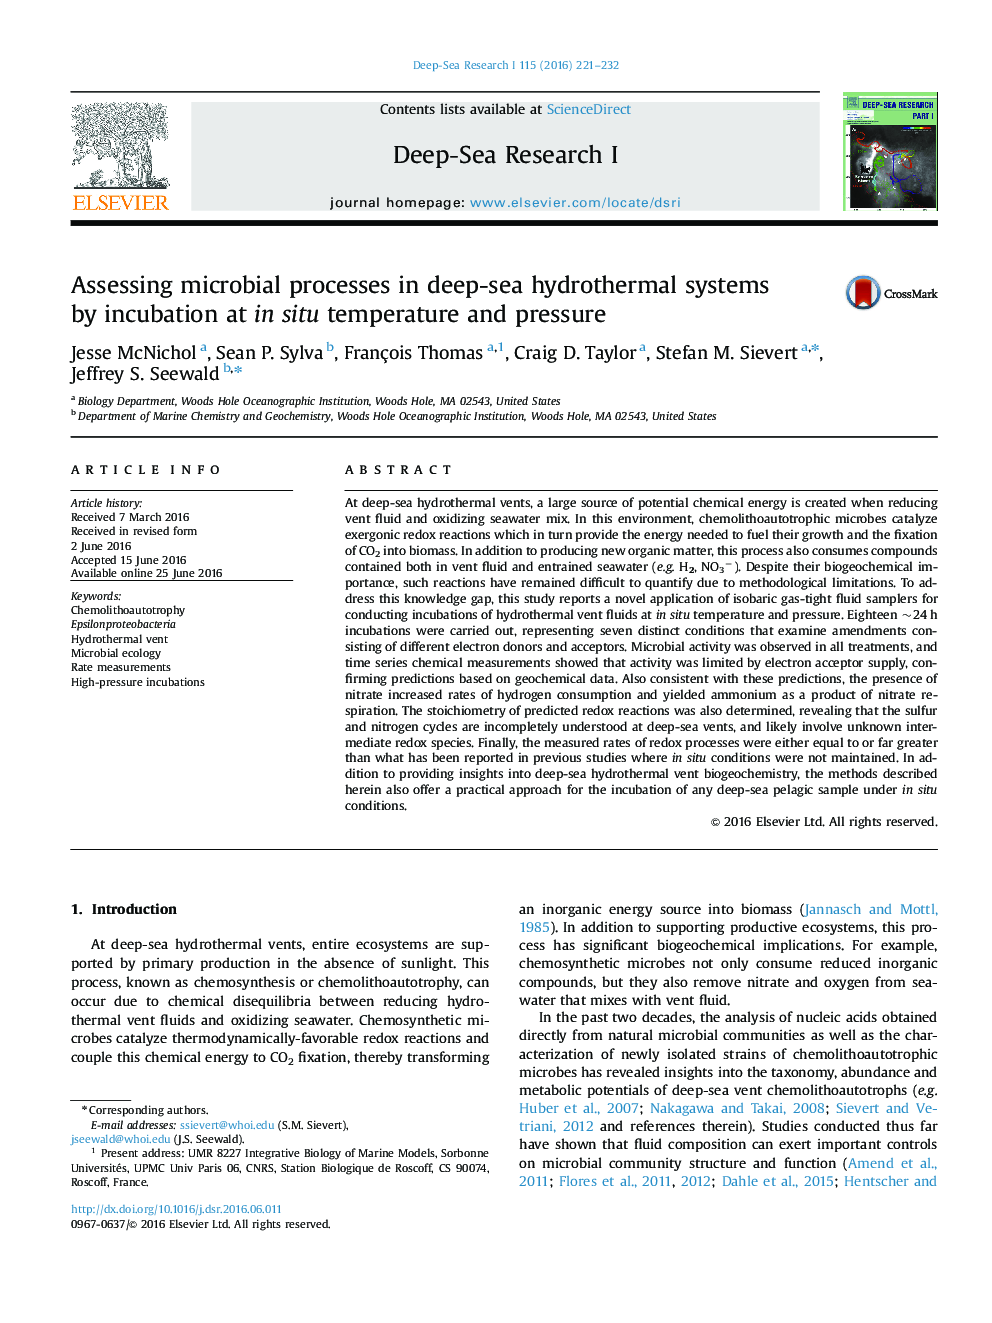 ارزیابی فرآیندهای میکروبی در سیستم های هیدروترمال دریایی عمیق توسط انکوباسیون در دمای و فشار در محیط 